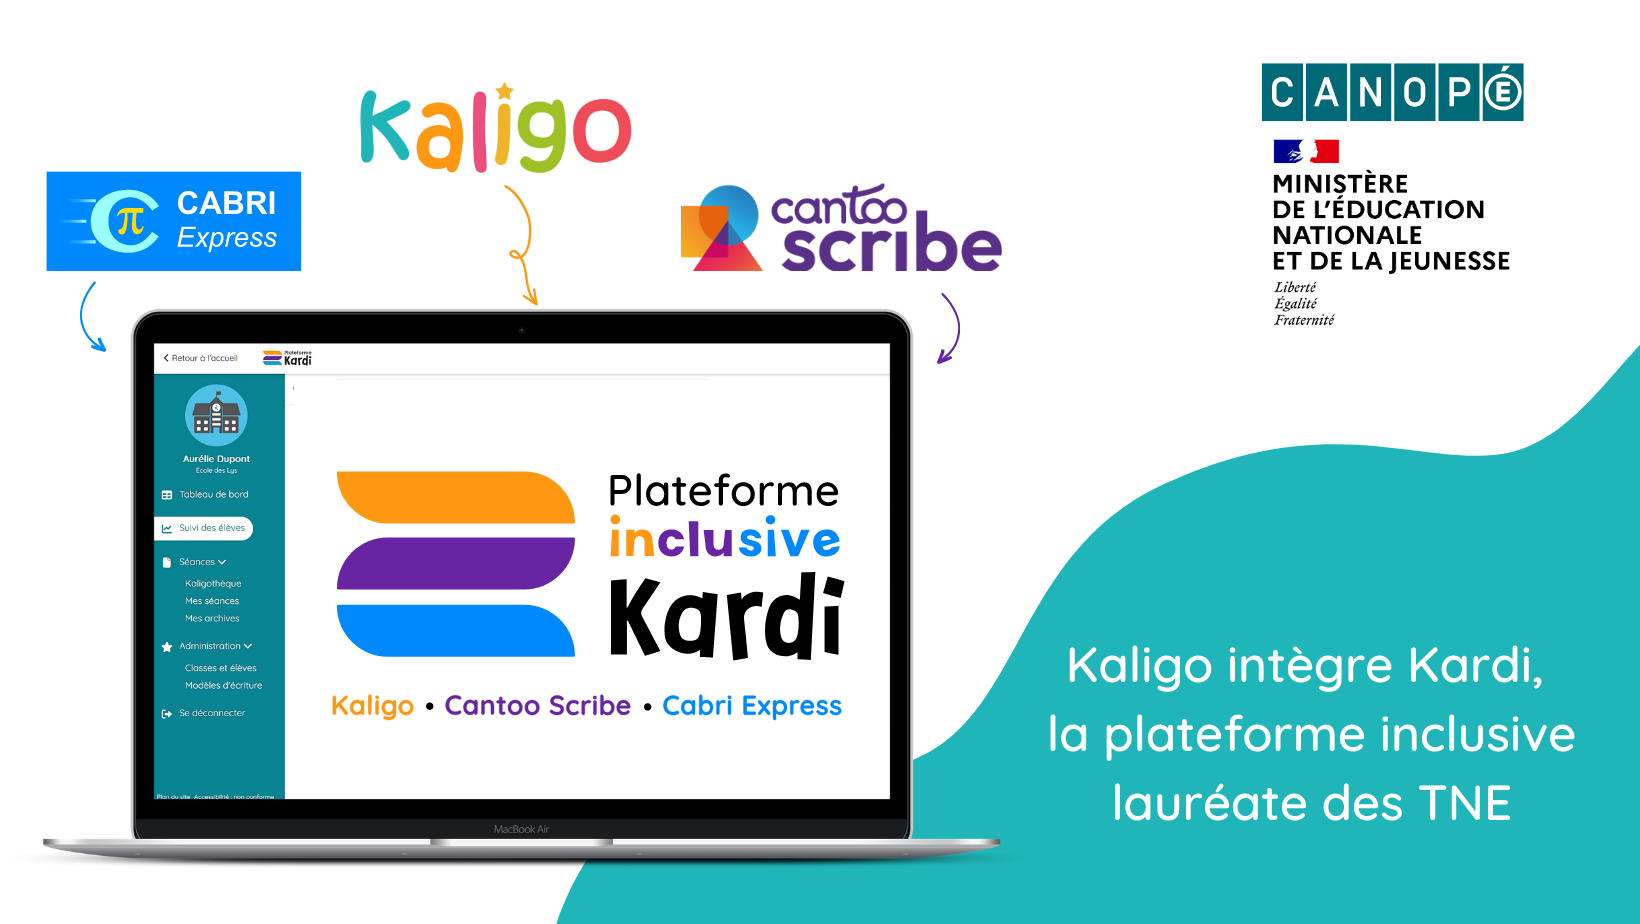 Image d'illustration : Kaligo, CabriExpress, Cantoo Scribe intègre la plateforme inclusive Kardi, lauréate des TNE, mis en place par Canopé et le Ministère de l'éducation nationale et de la jeunesse